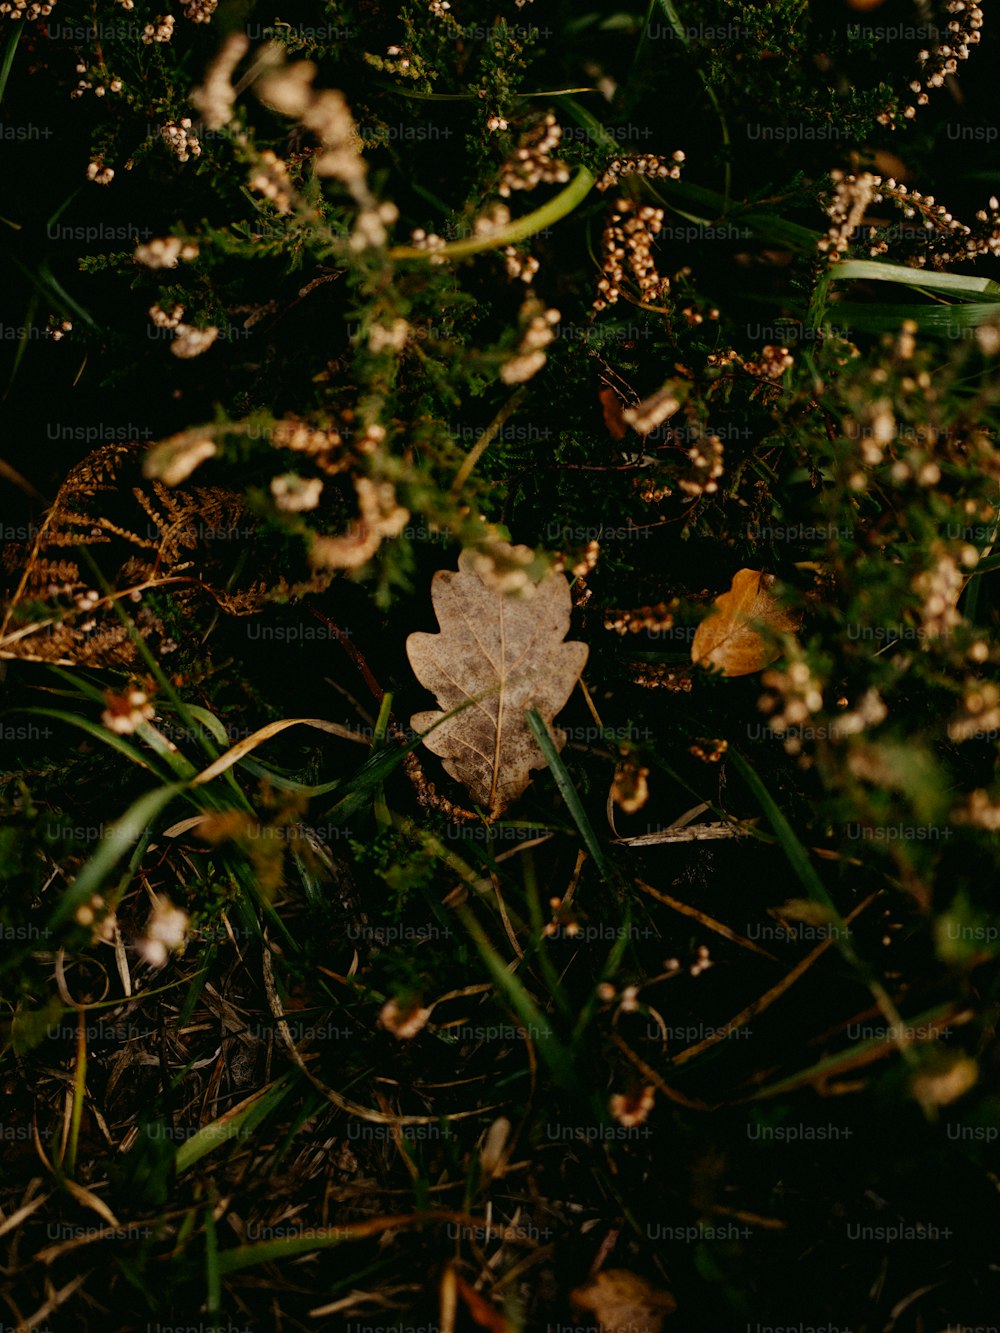 풀밭에 앉아있는 나뭇잎